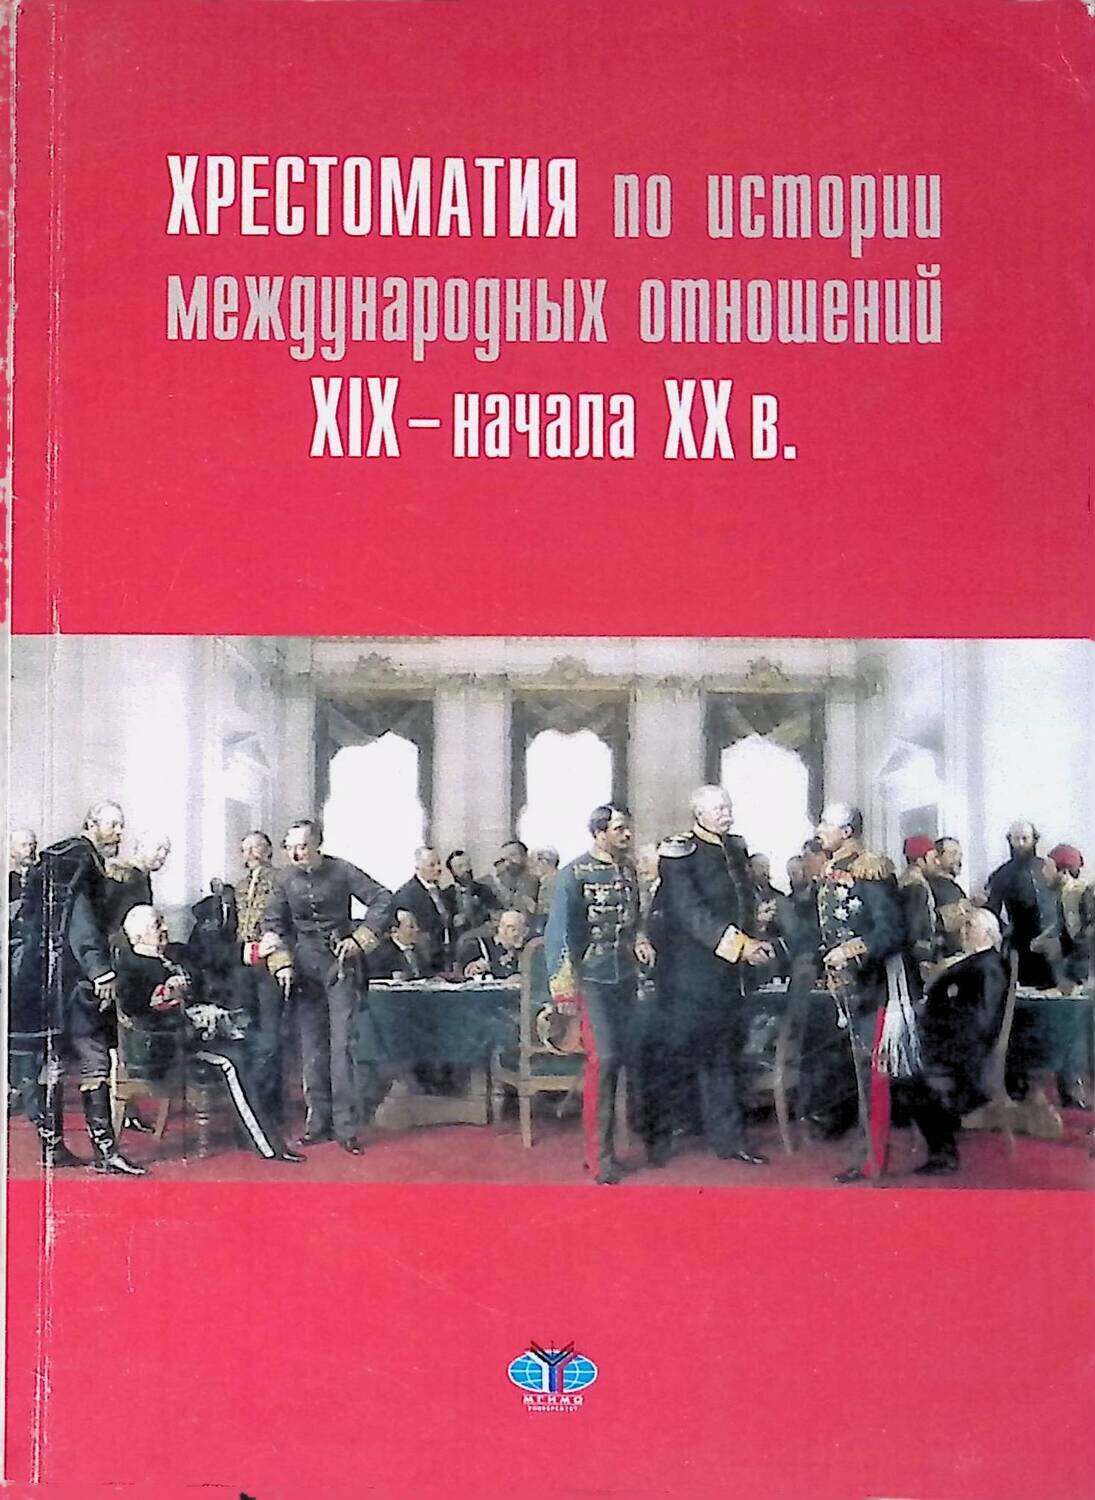 Хрестоматия по истории международных отношений  XIX-XX в.; нет автора